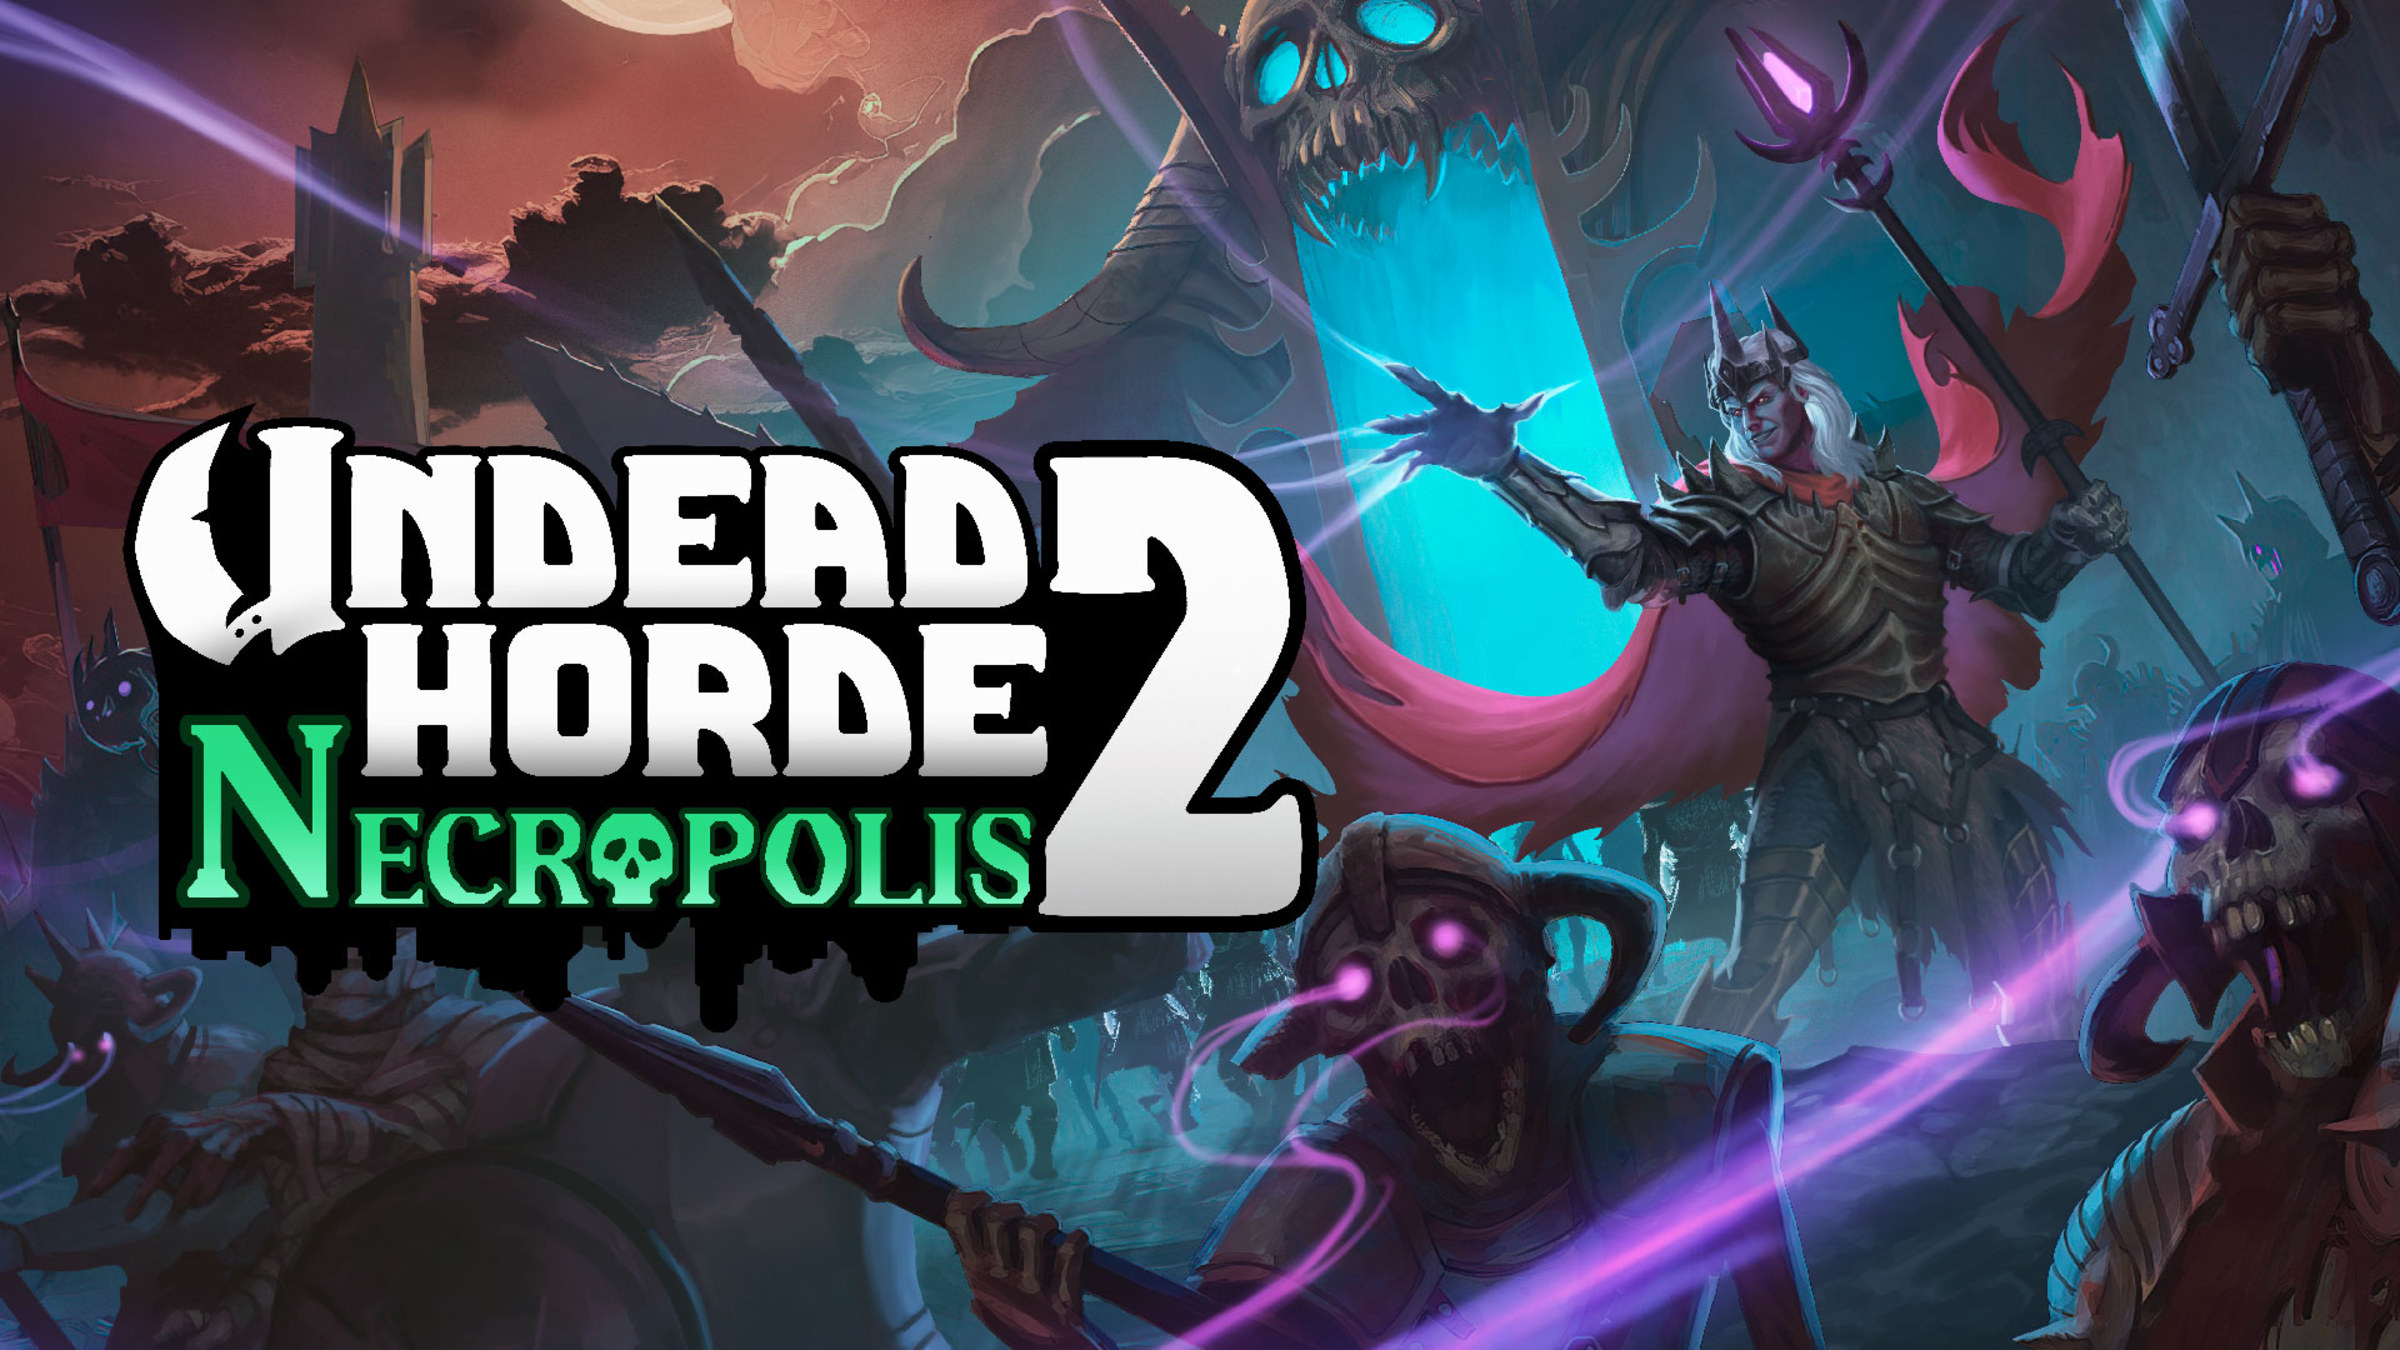 Undead Horde 2: Necropolis